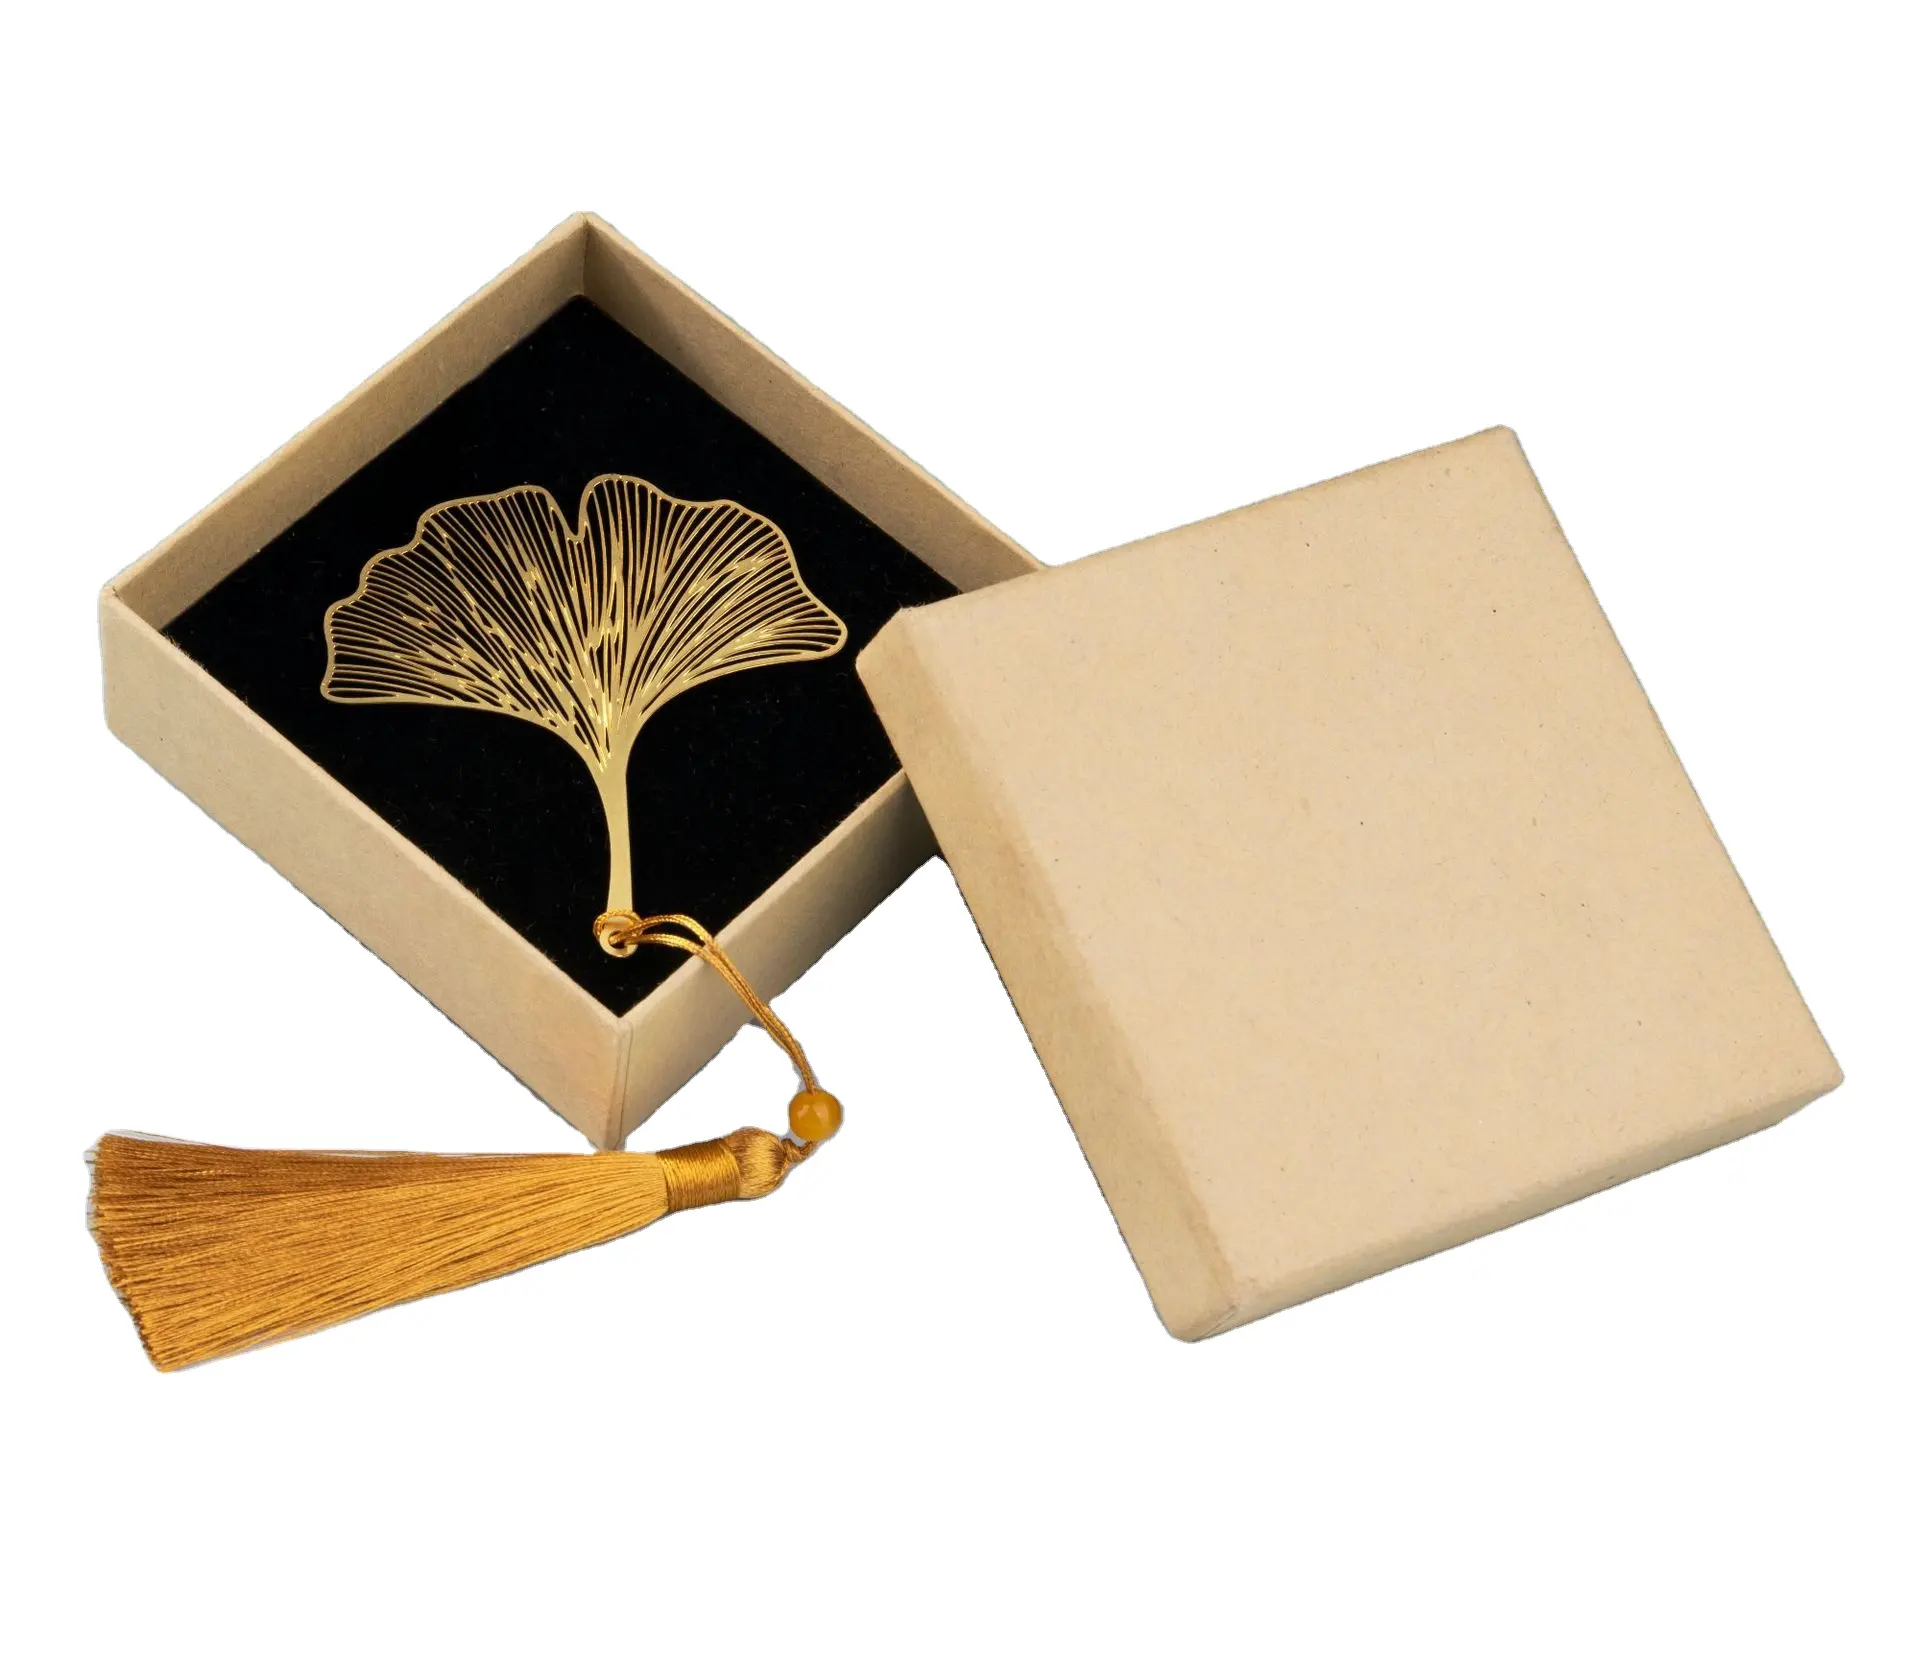 ブックマークに属する固定木の葉静脈ブックマーク学生用品絶妙な文化的および創造的なギフト真鍮中空ブックマ